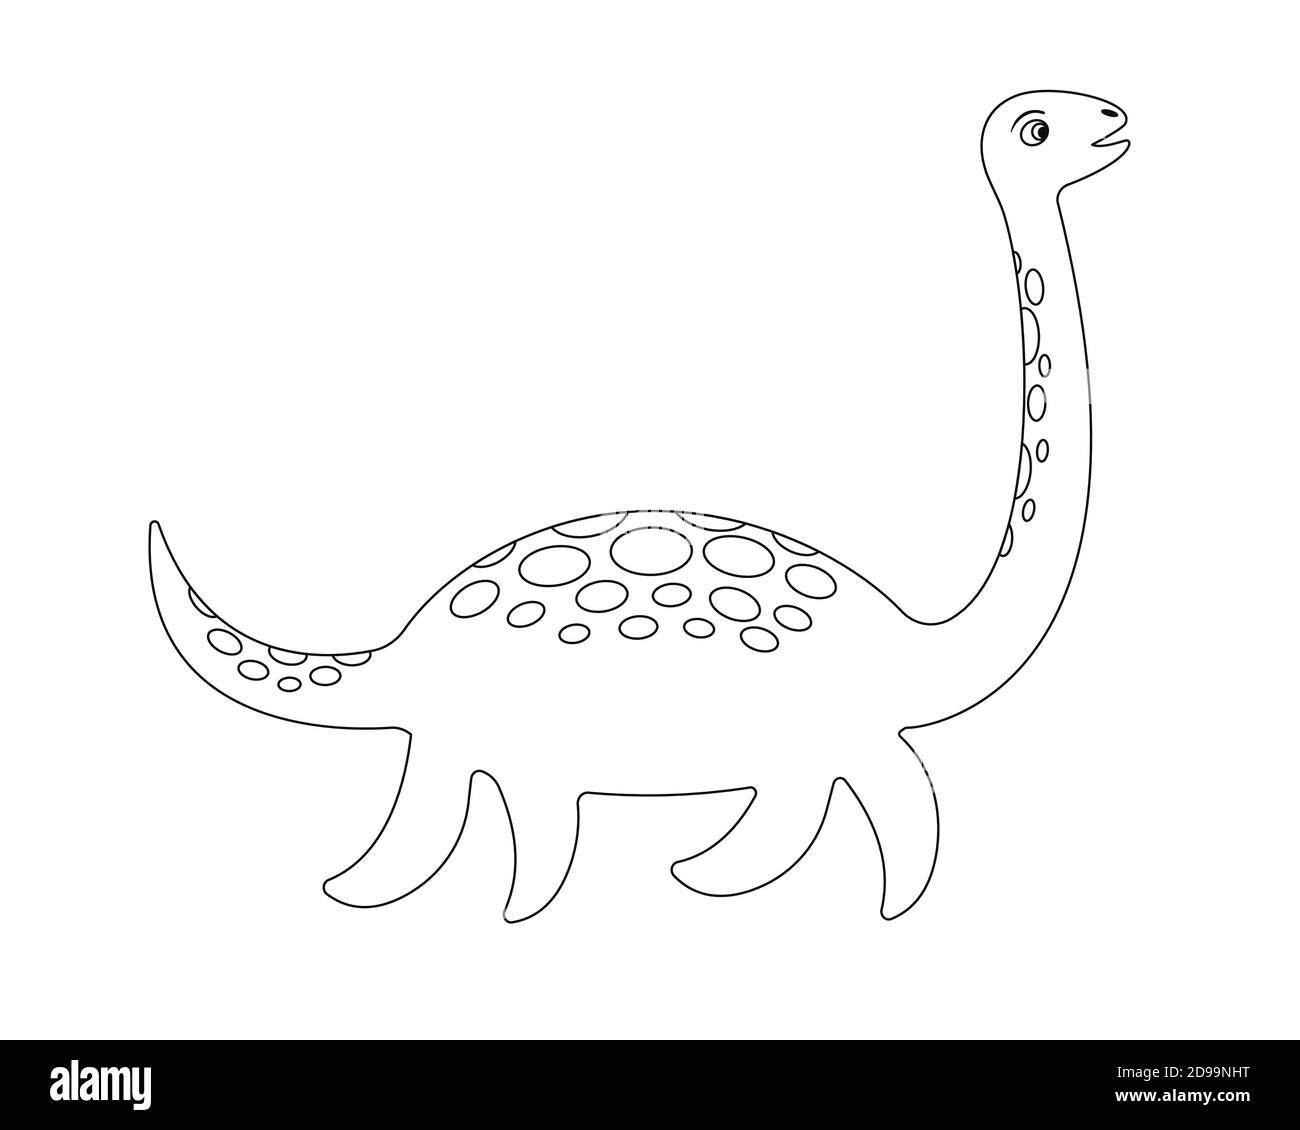 Pagina da colorare del mostro di Loch Ness. Plesiosaur Nessie in stile cartoon. Illustrazione vettoriale. Illustrazione Vettoriale